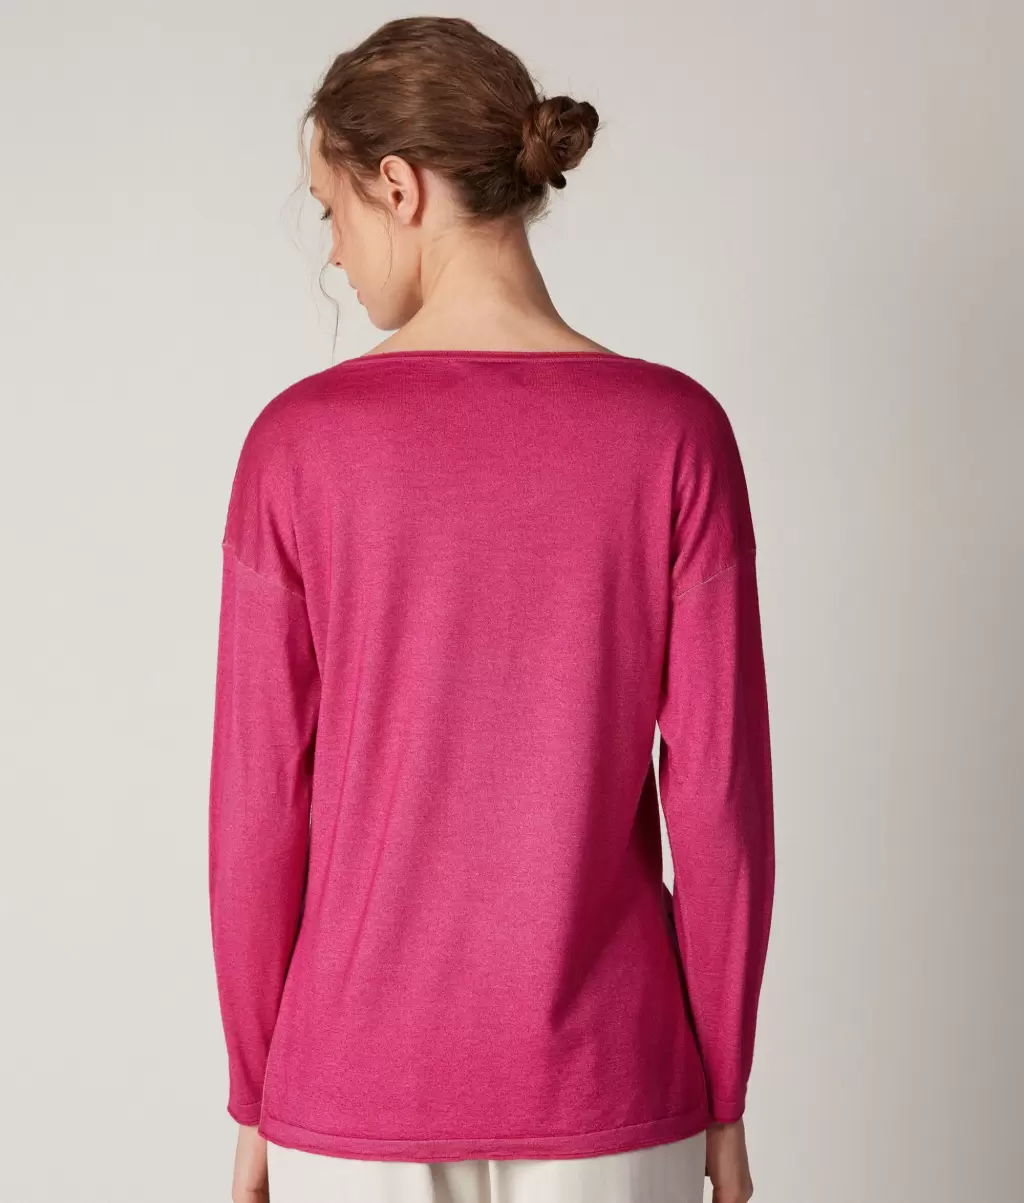 Swetry Z Okrągłym Dekoltem Bluzka Z Dekoltem W Łódkę Z Kaszmiru Ultrafine Kobieta Falconeri Pink - 2